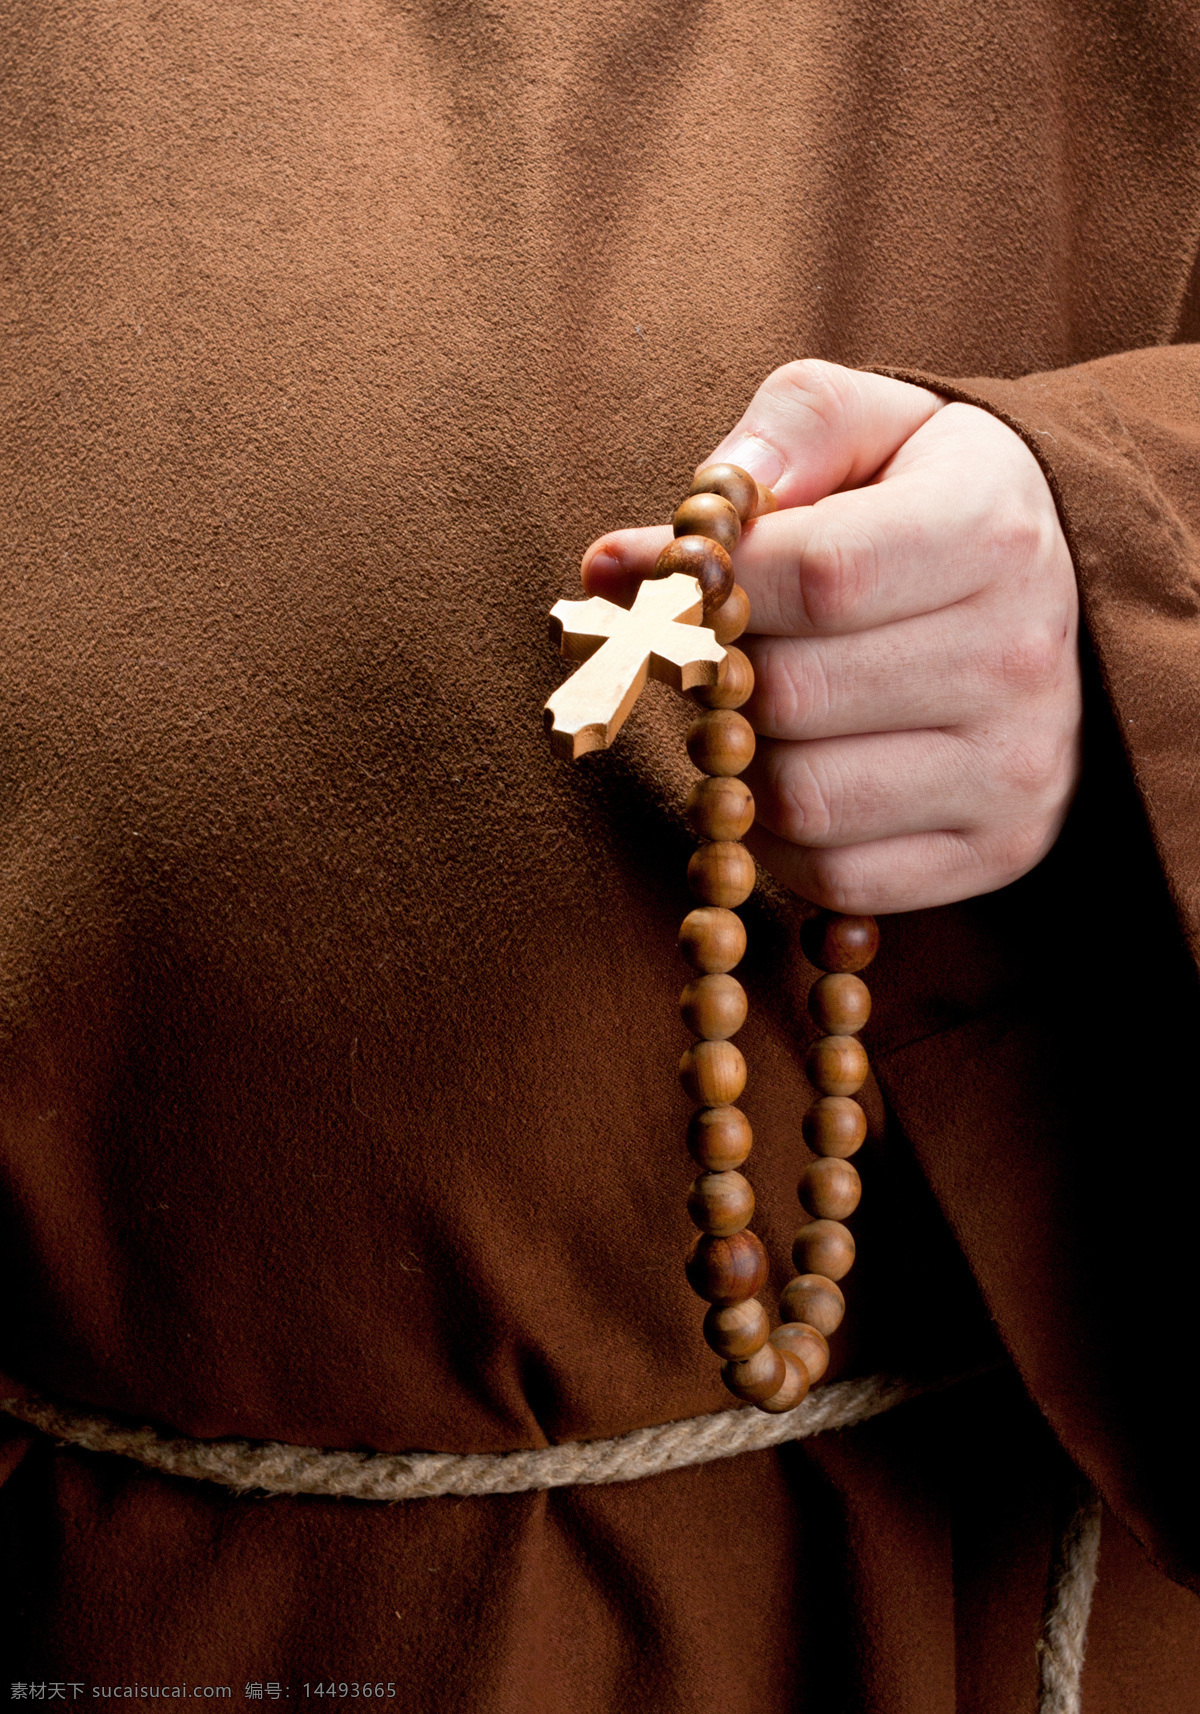 手 珠链 十字架 祈祷 男人 祈祷的男人 祷告 虔诚祈祷 祈祷手势 生活人物 人物图片